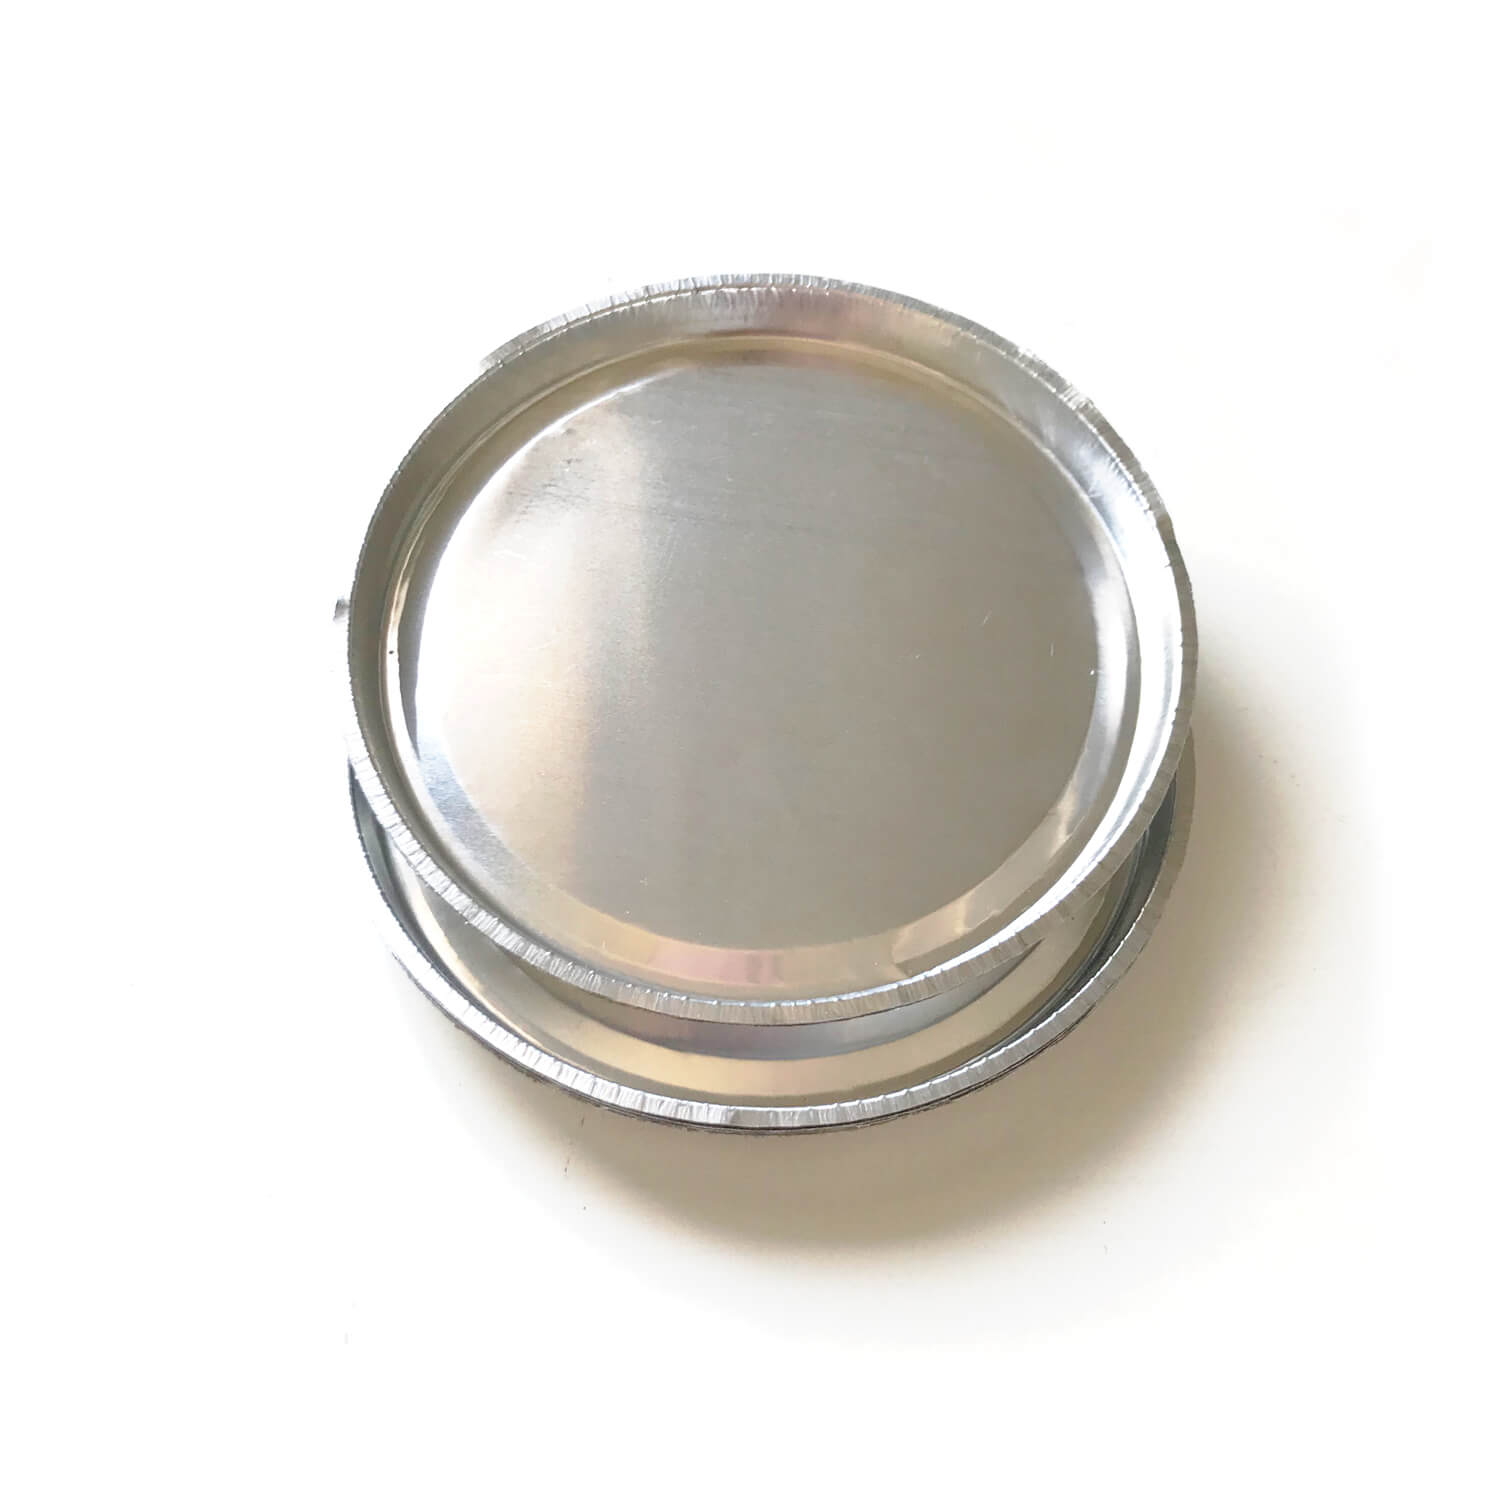 卤素水分仪不锈钢样品盘 铝箔托盘(图2)